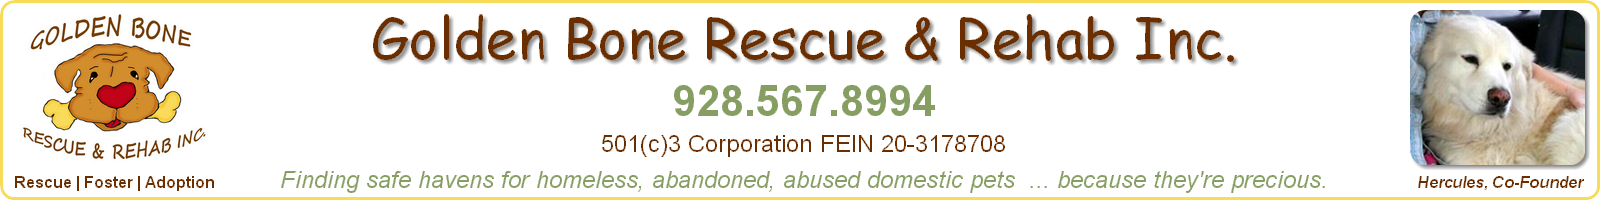 Foster - Golden Bone Rescue & Rehab, Inc., Sedona, Arizona